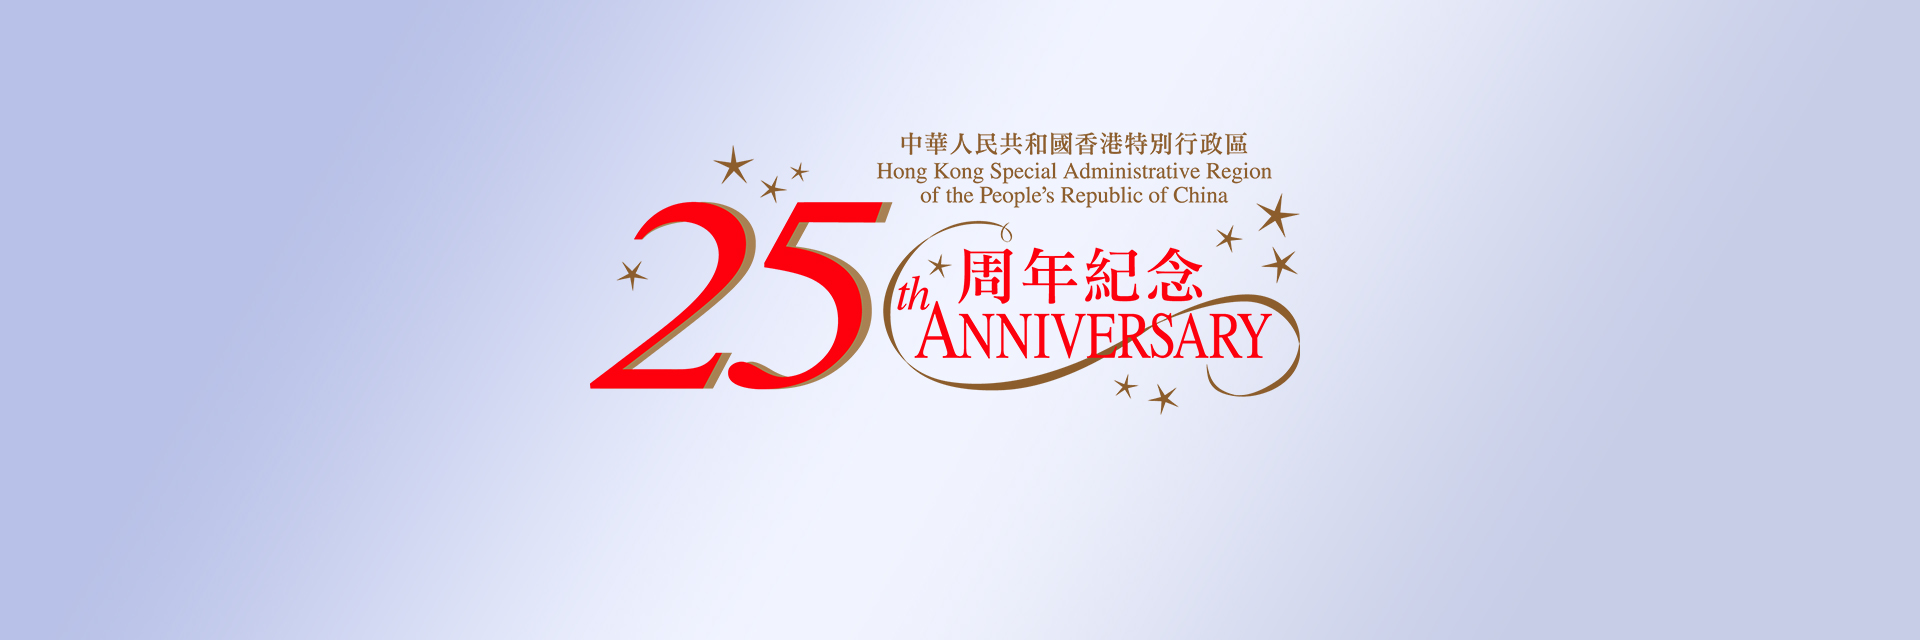 驻重庆联络处在「第四届西洽会」设展庆祝香港特区成立25周年